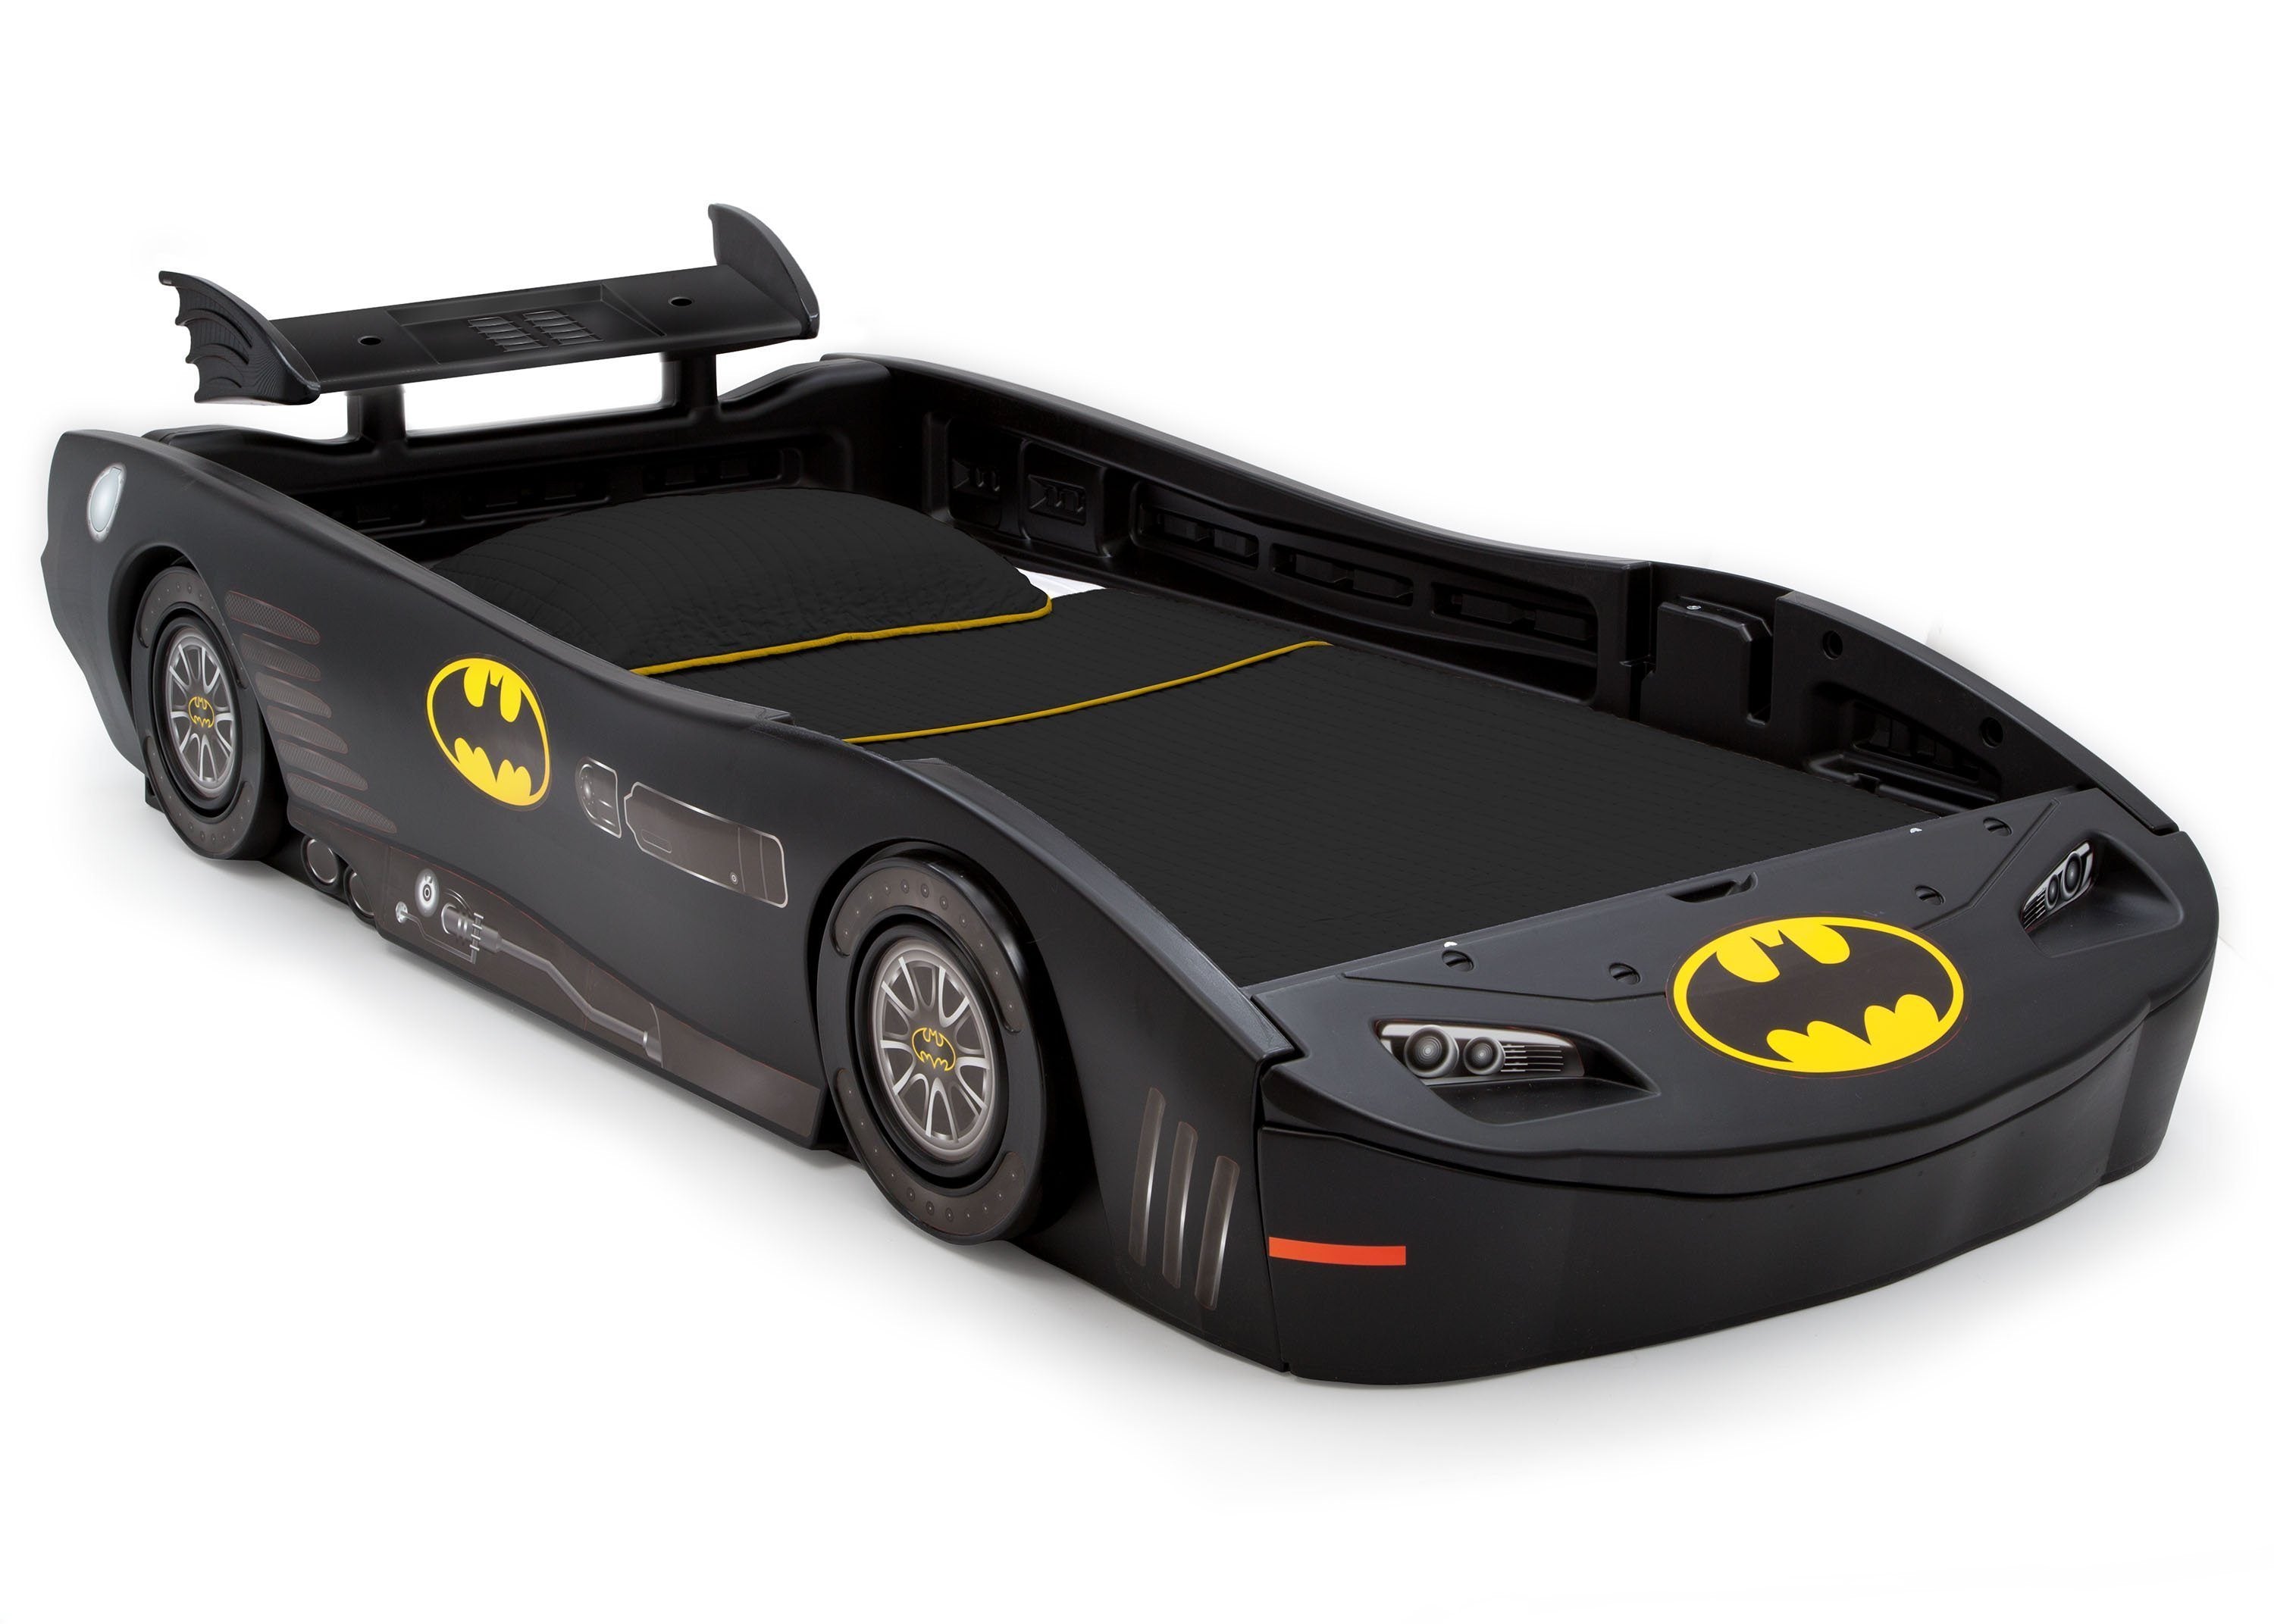 Batmobiles down the ages - check out Batman's best vehicles